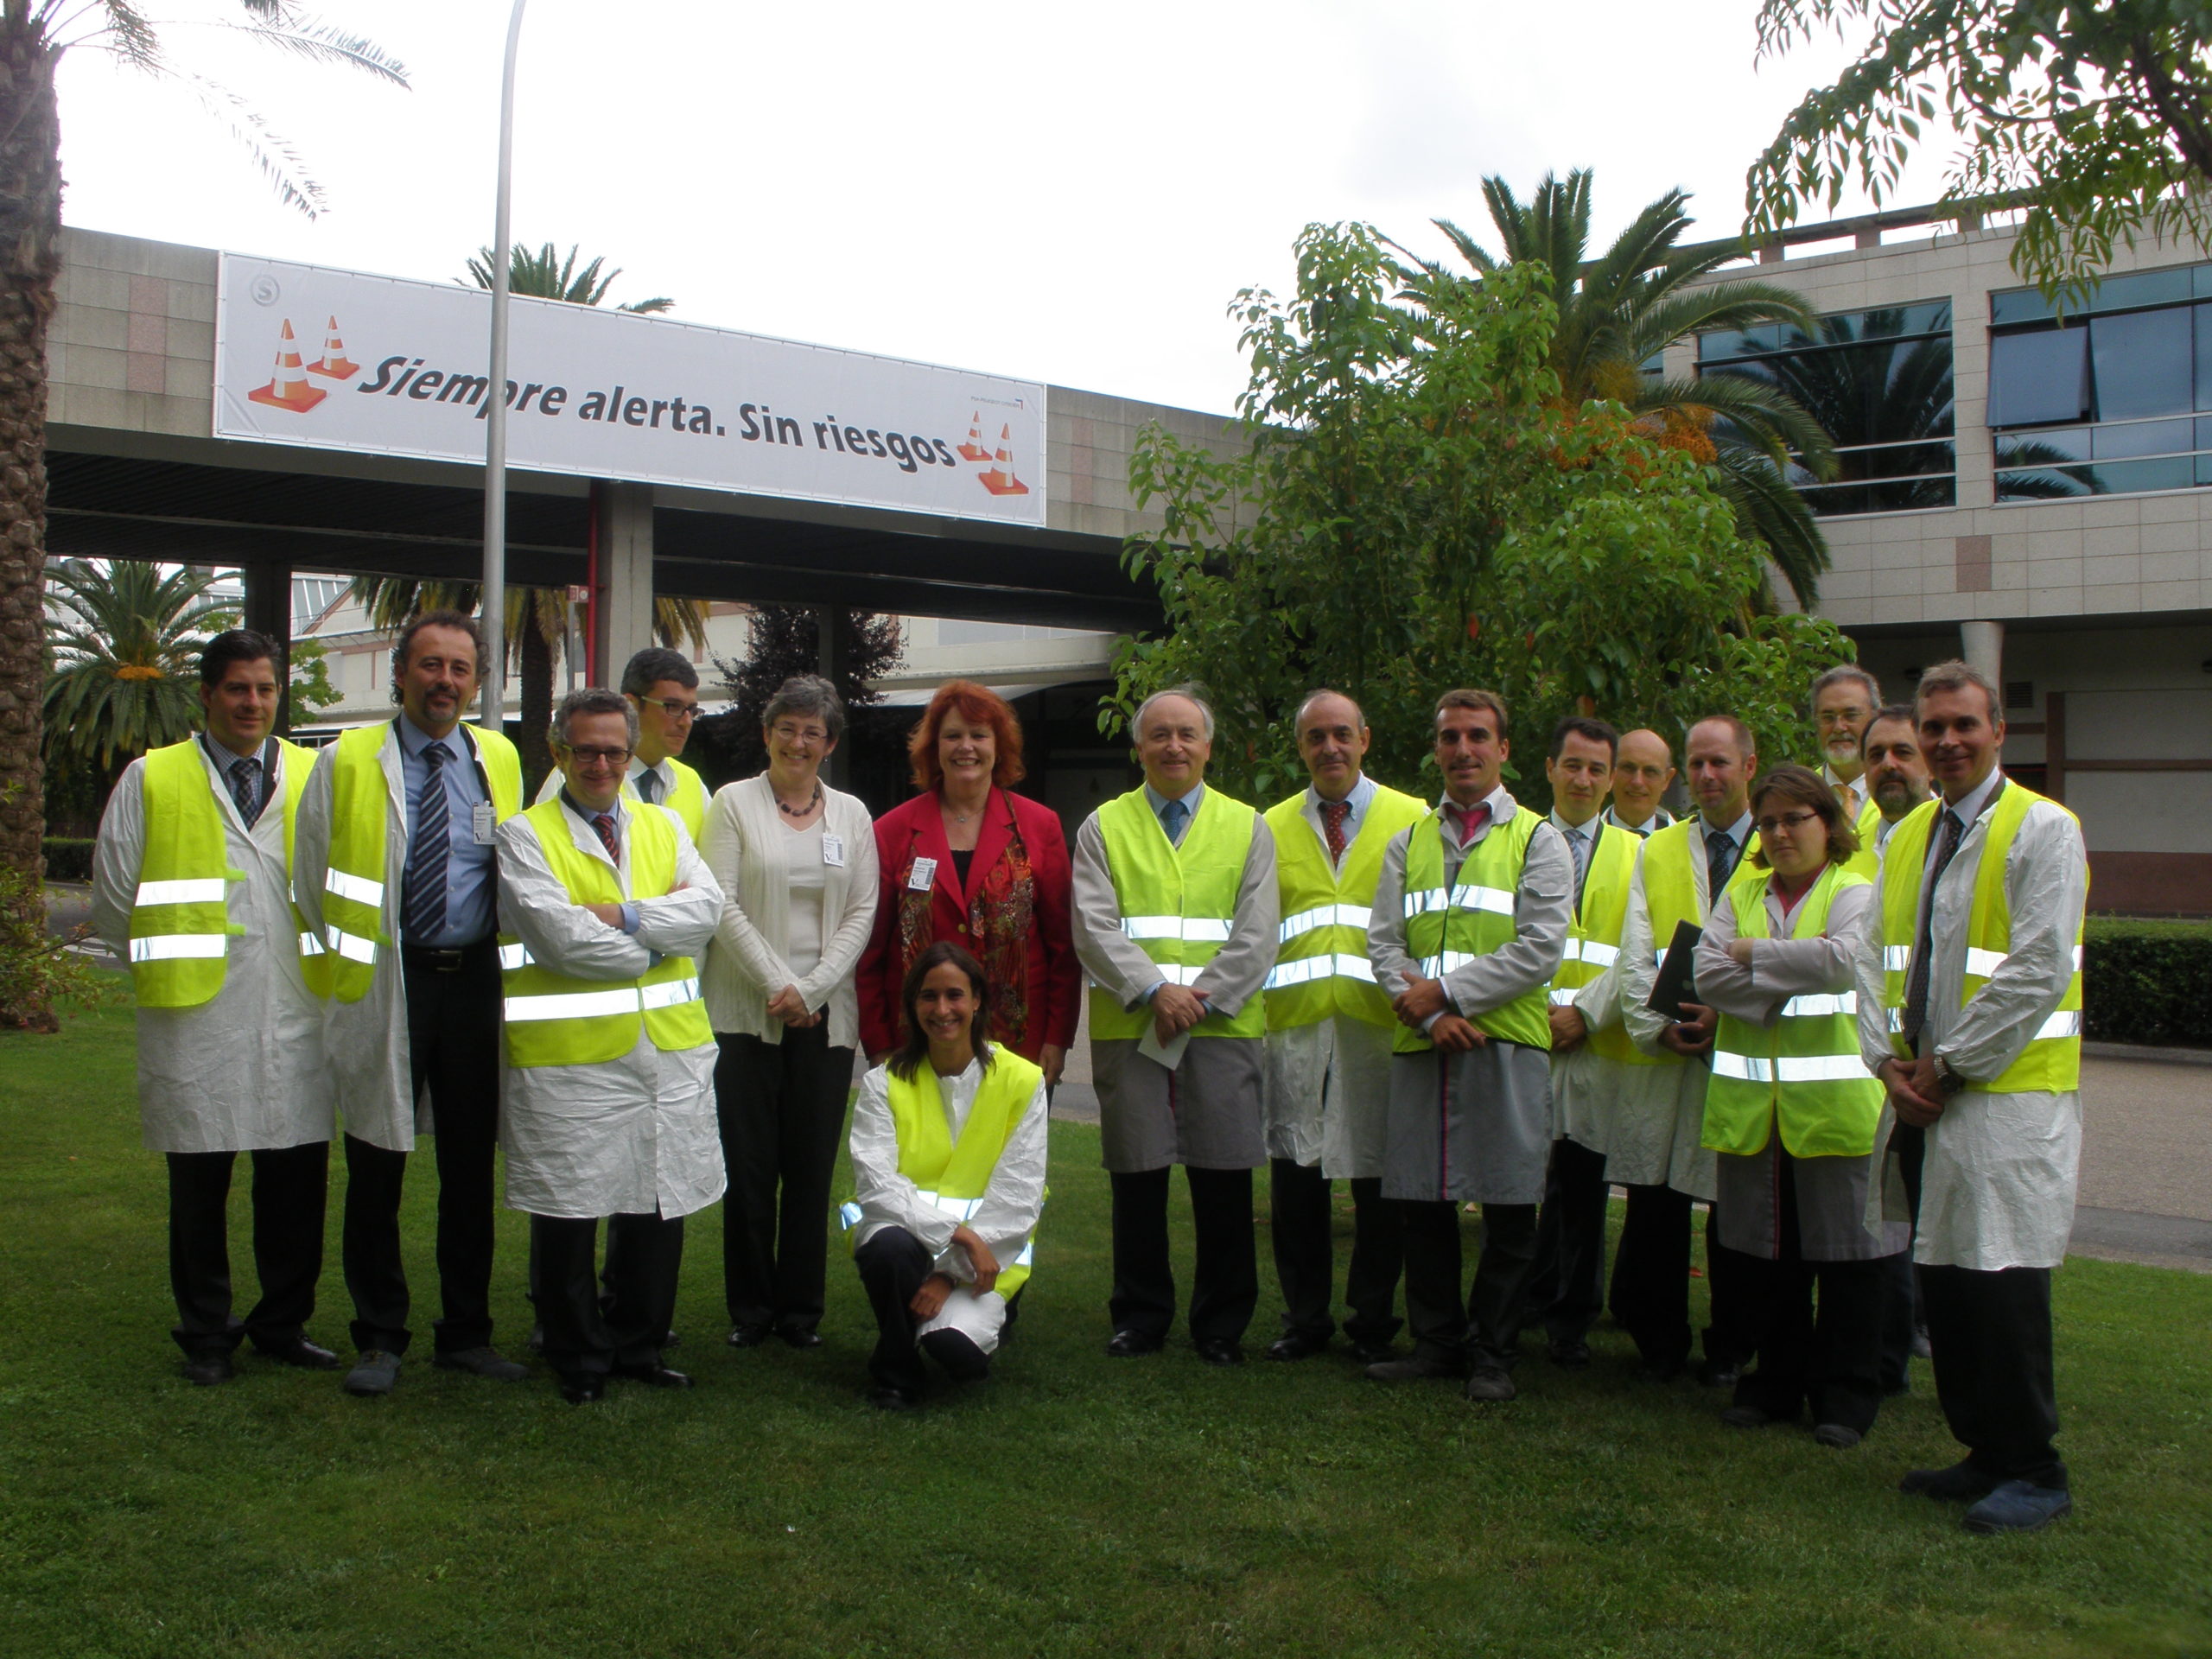 Directores Generales, junto a la experta mundial en Lean Manufacturing, Deborah Nightingale, en el Centro de Vigo de PSA Peugeot Citroën.